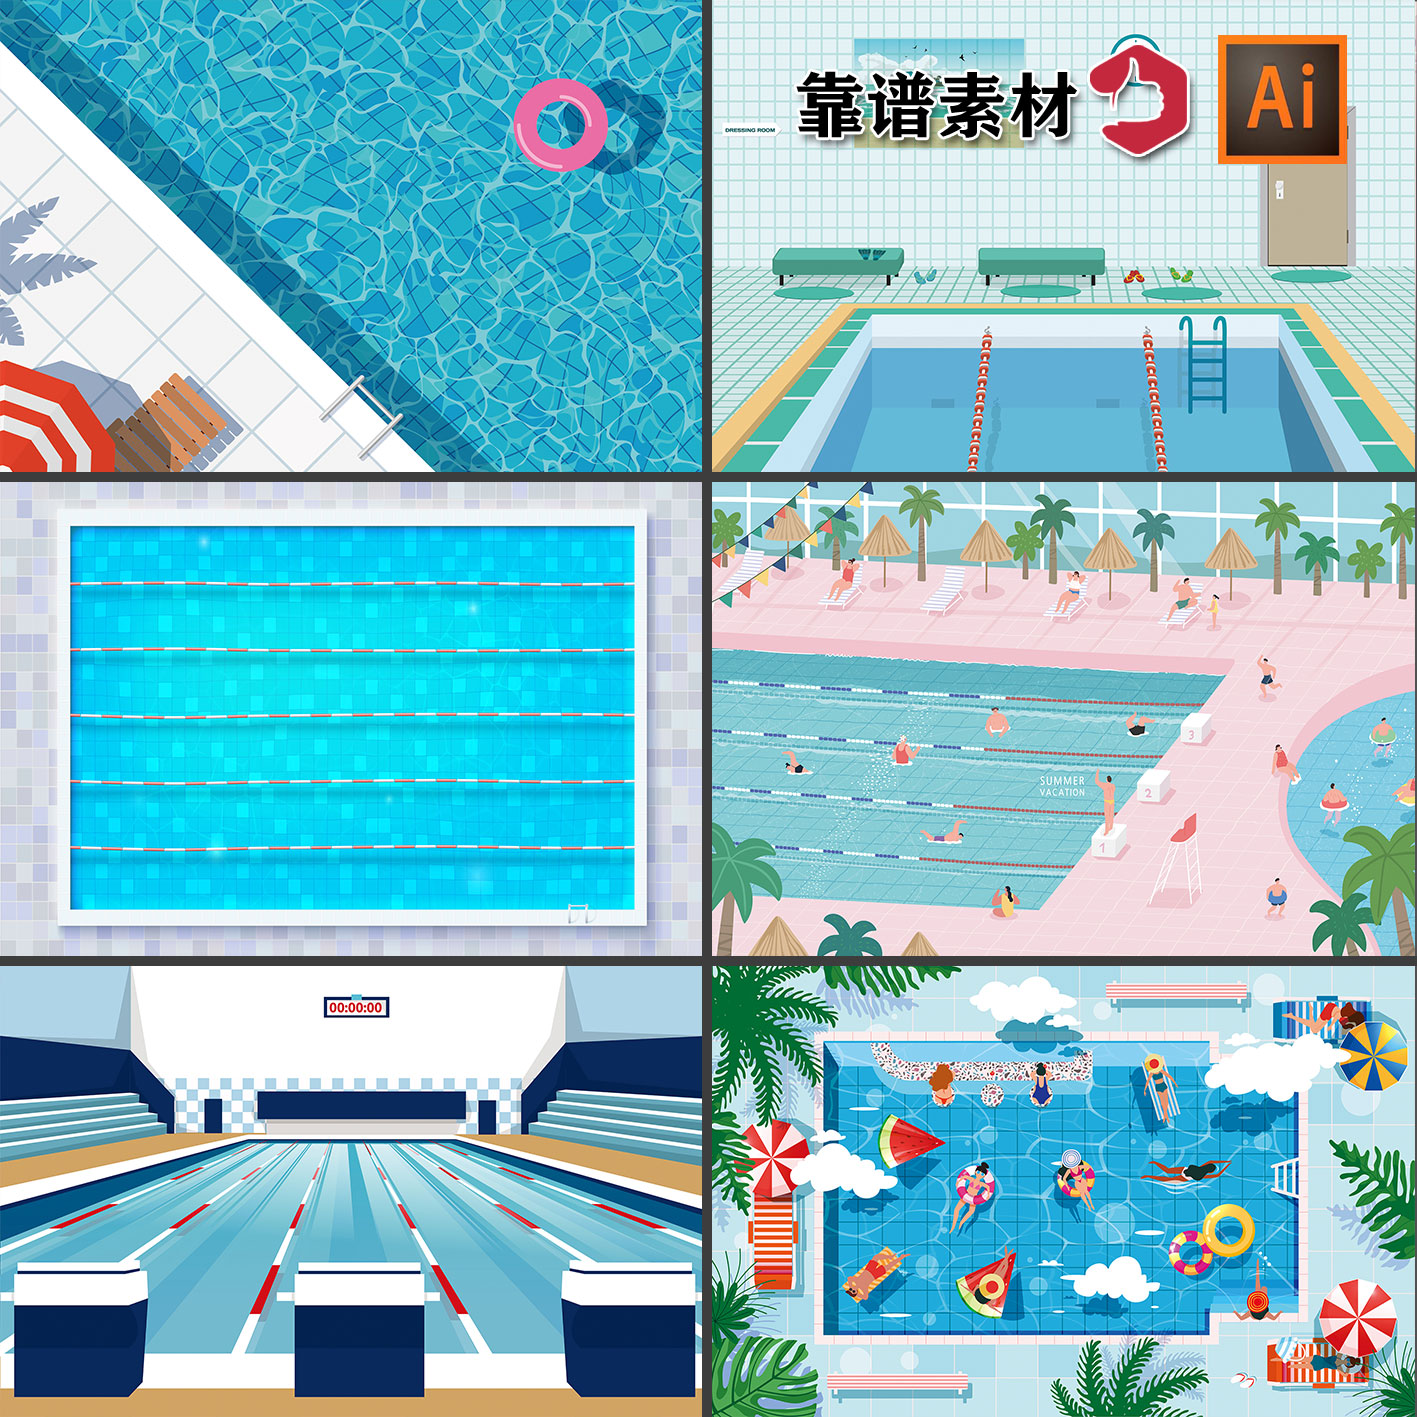 夏季夏天游泳培训比赛泳池插画背景海报AI矢量设计素材